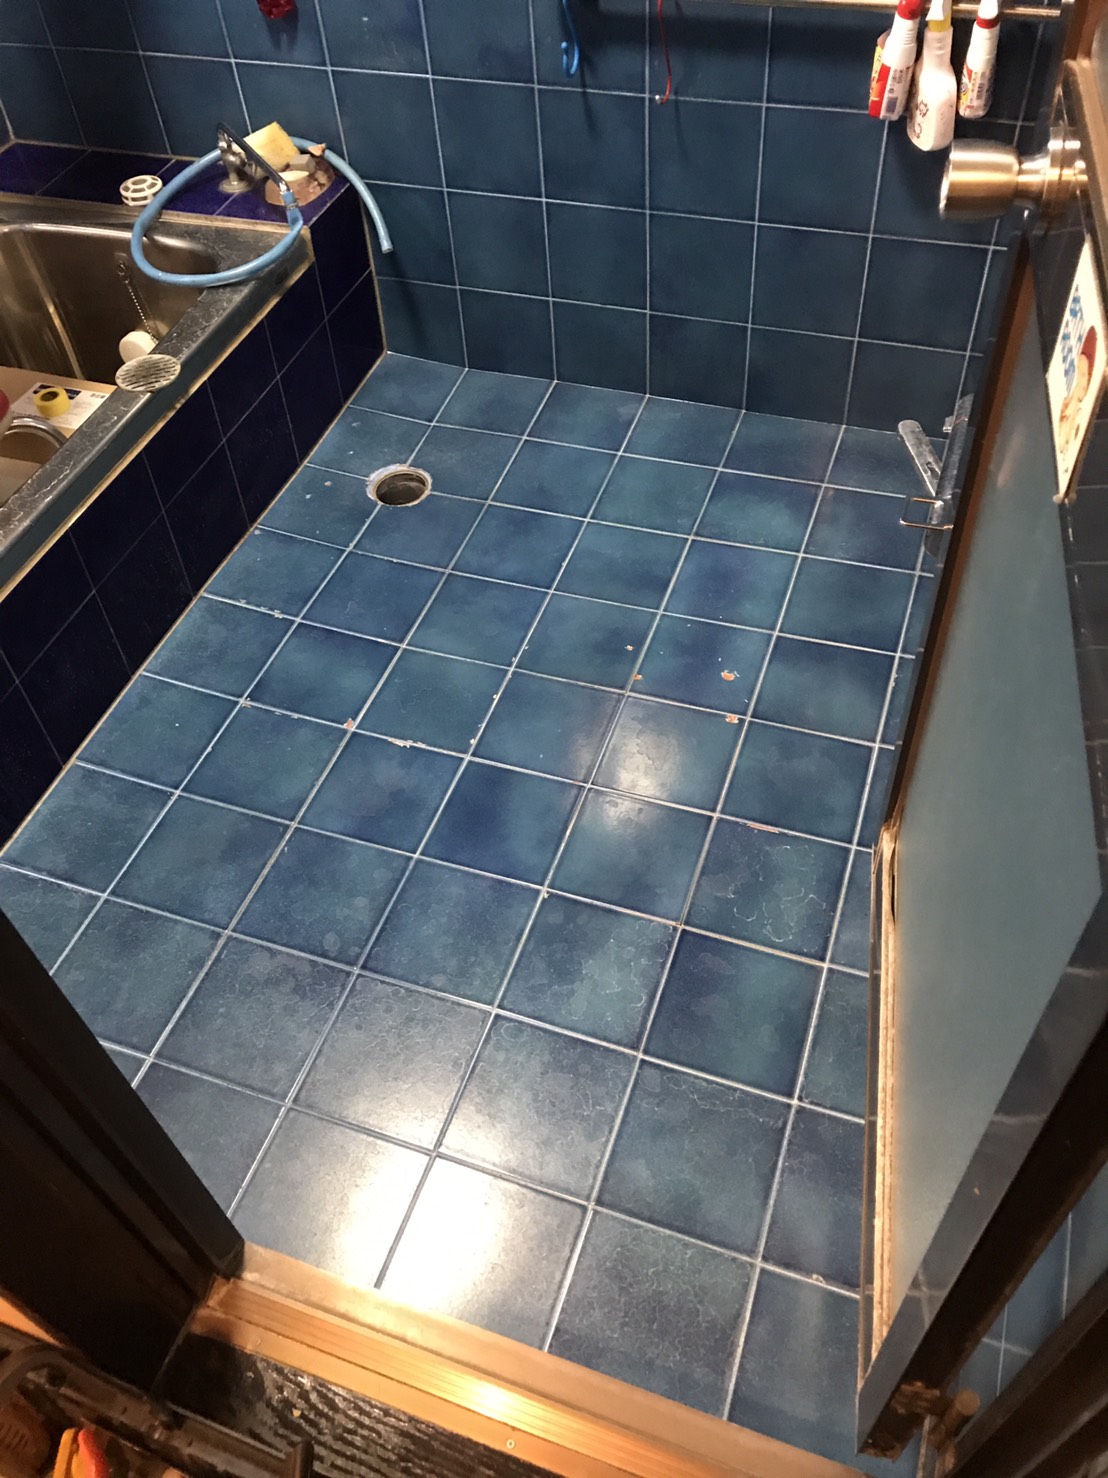 東京都台東区にて、戸建住宅の浴室床リフォーム工事を行いました。